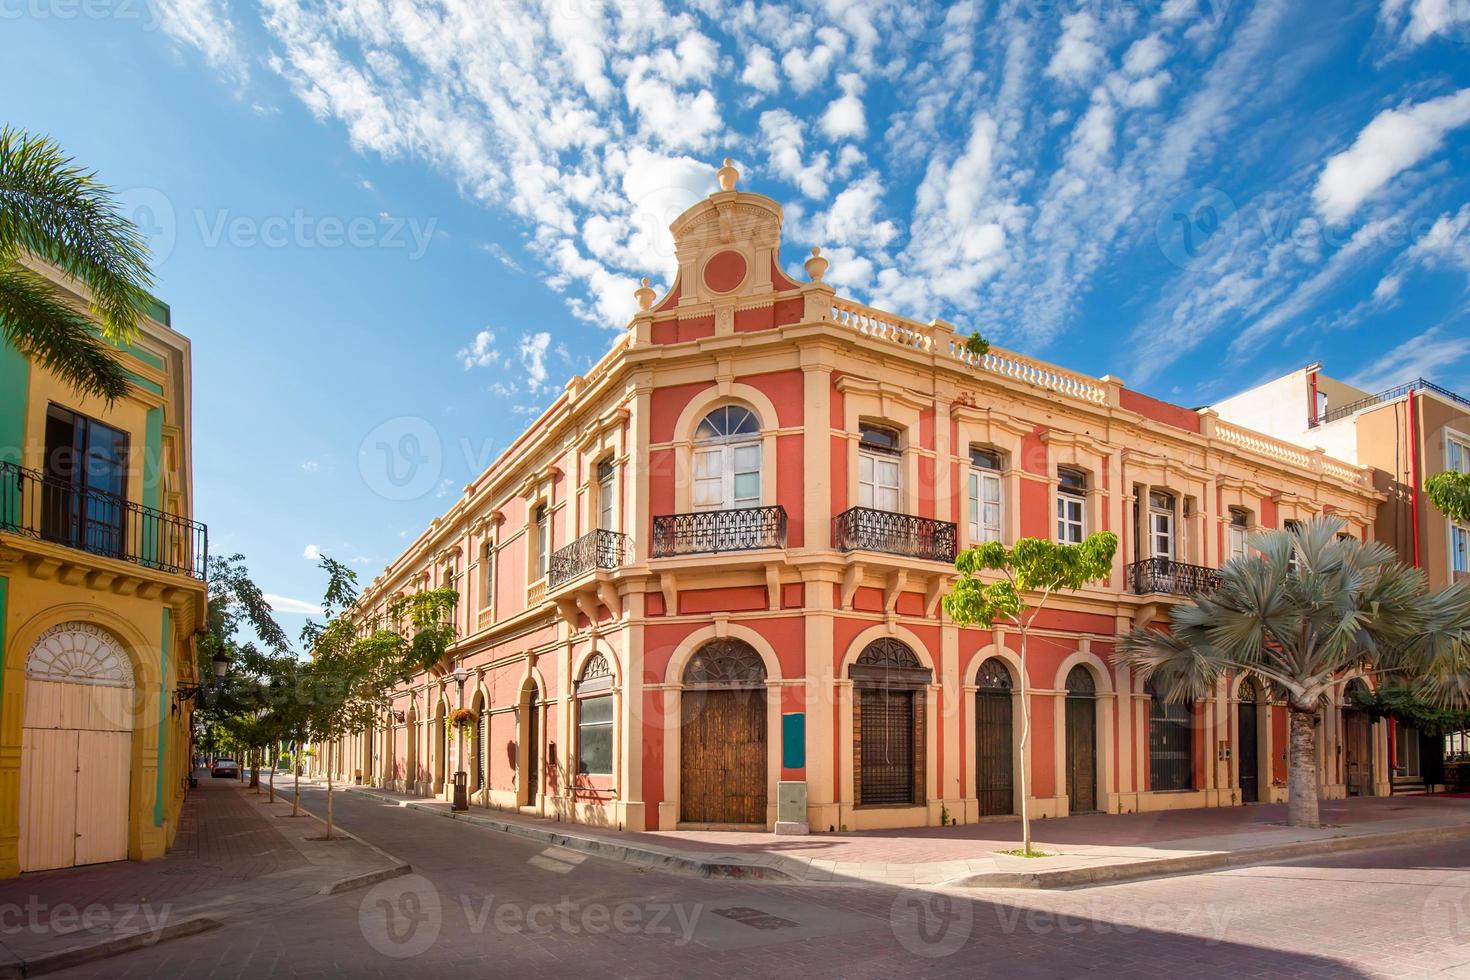 méxico, mazatlan, ruas coloridas da cidade velha no centro histórico da cidade foto